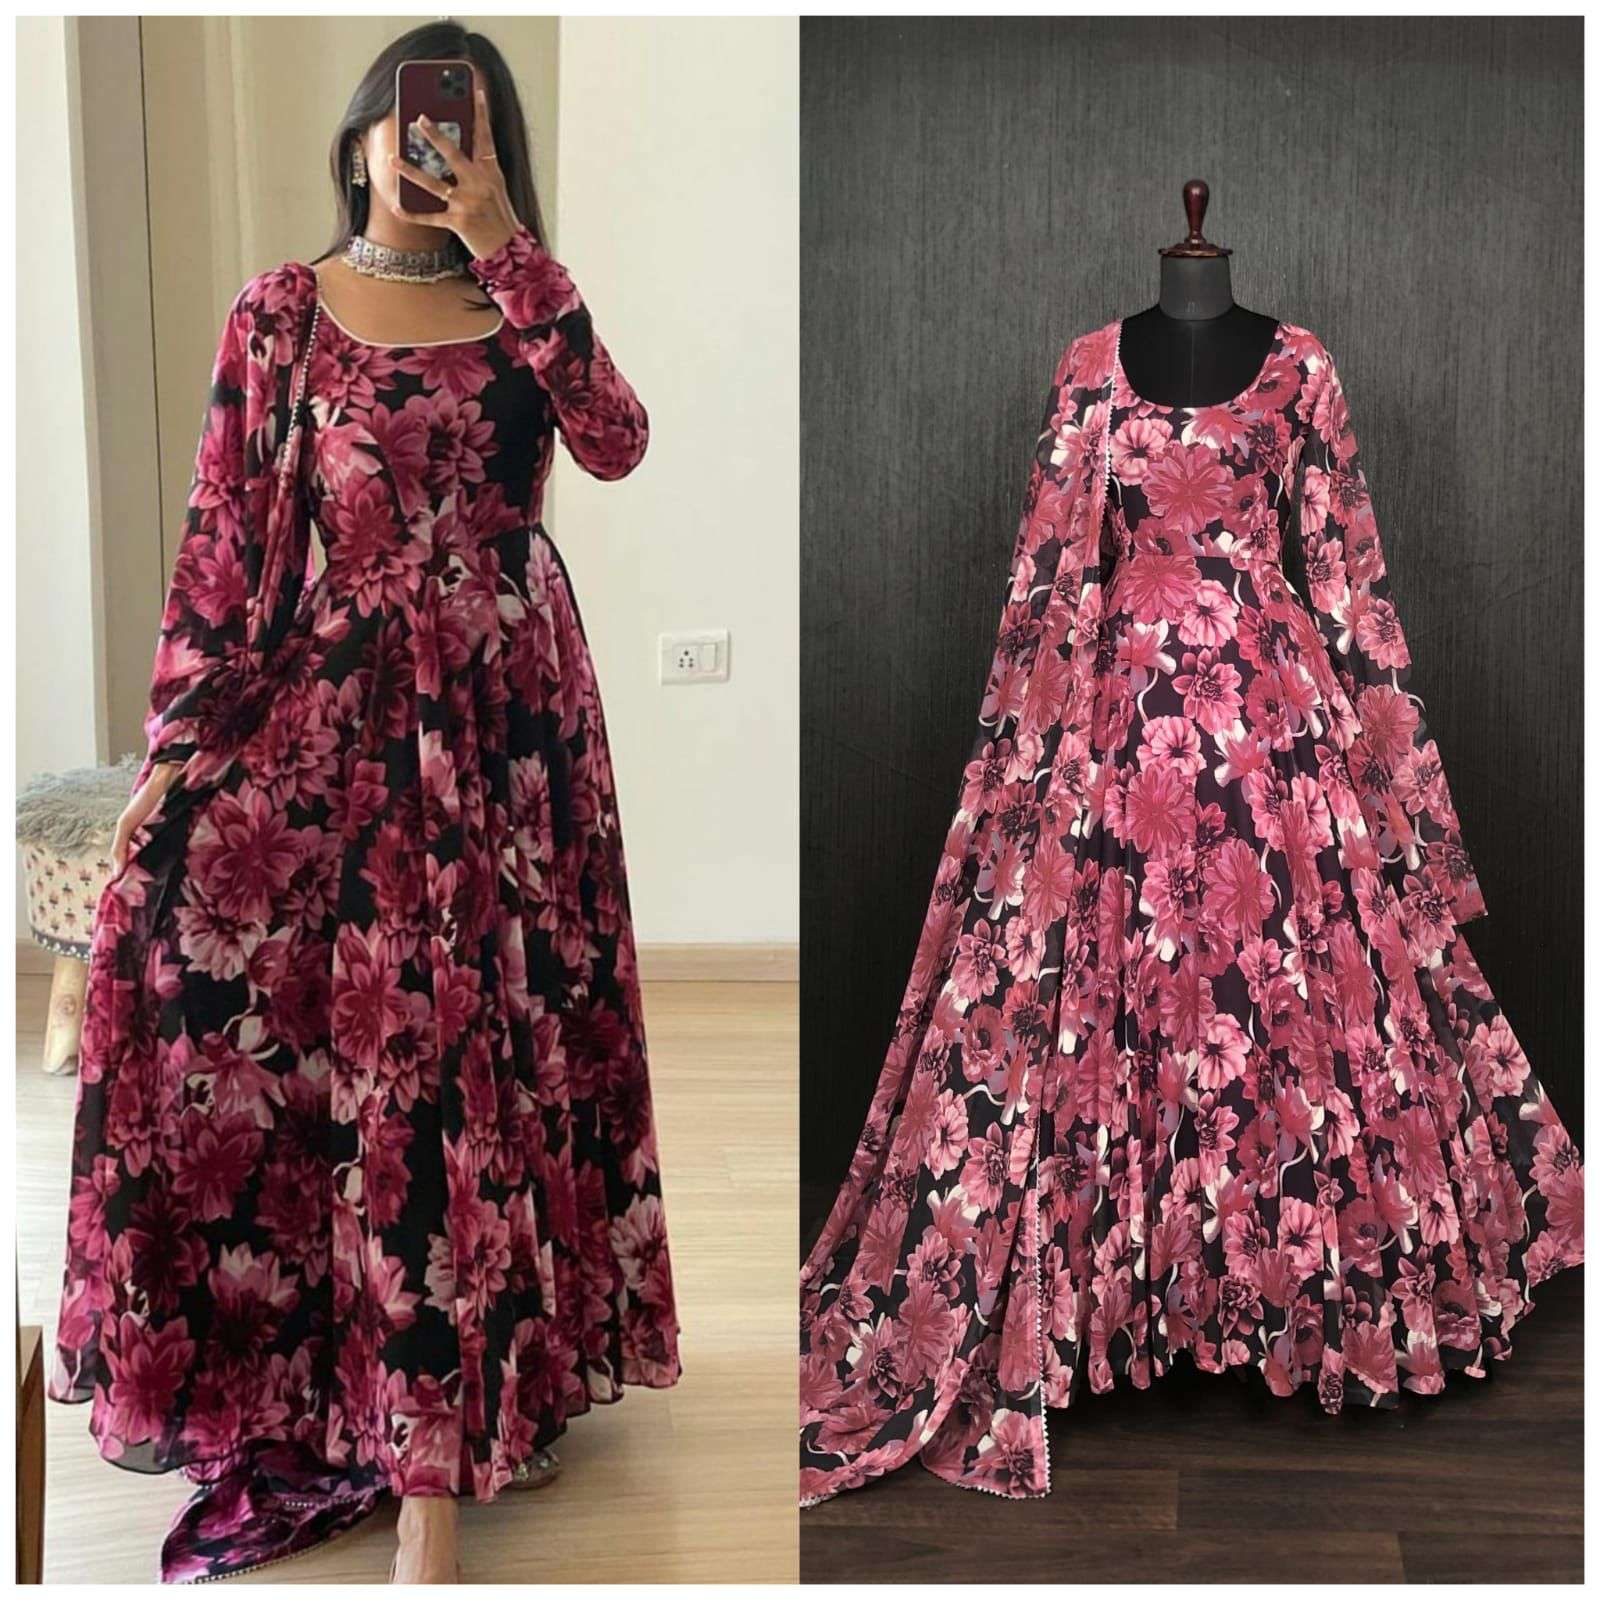 Rosebud Fashions New Flower Girl Dresses Style 5115 - Dupioni Silk | New  Flower Girl Dresses